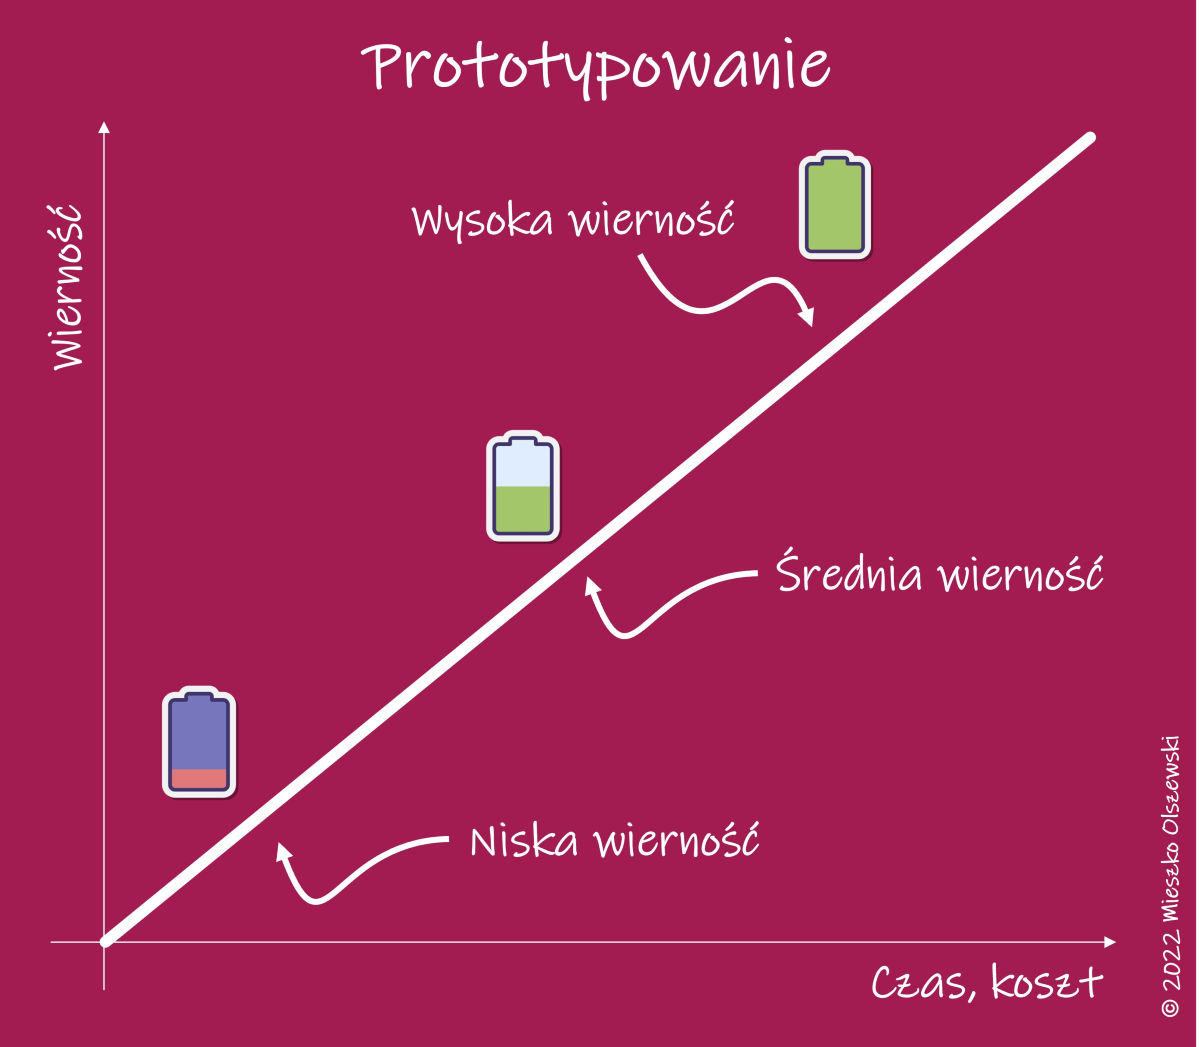 Prototyp i prototypowanie - zależność między wiernoscią a czasem i kosztem - diagram.